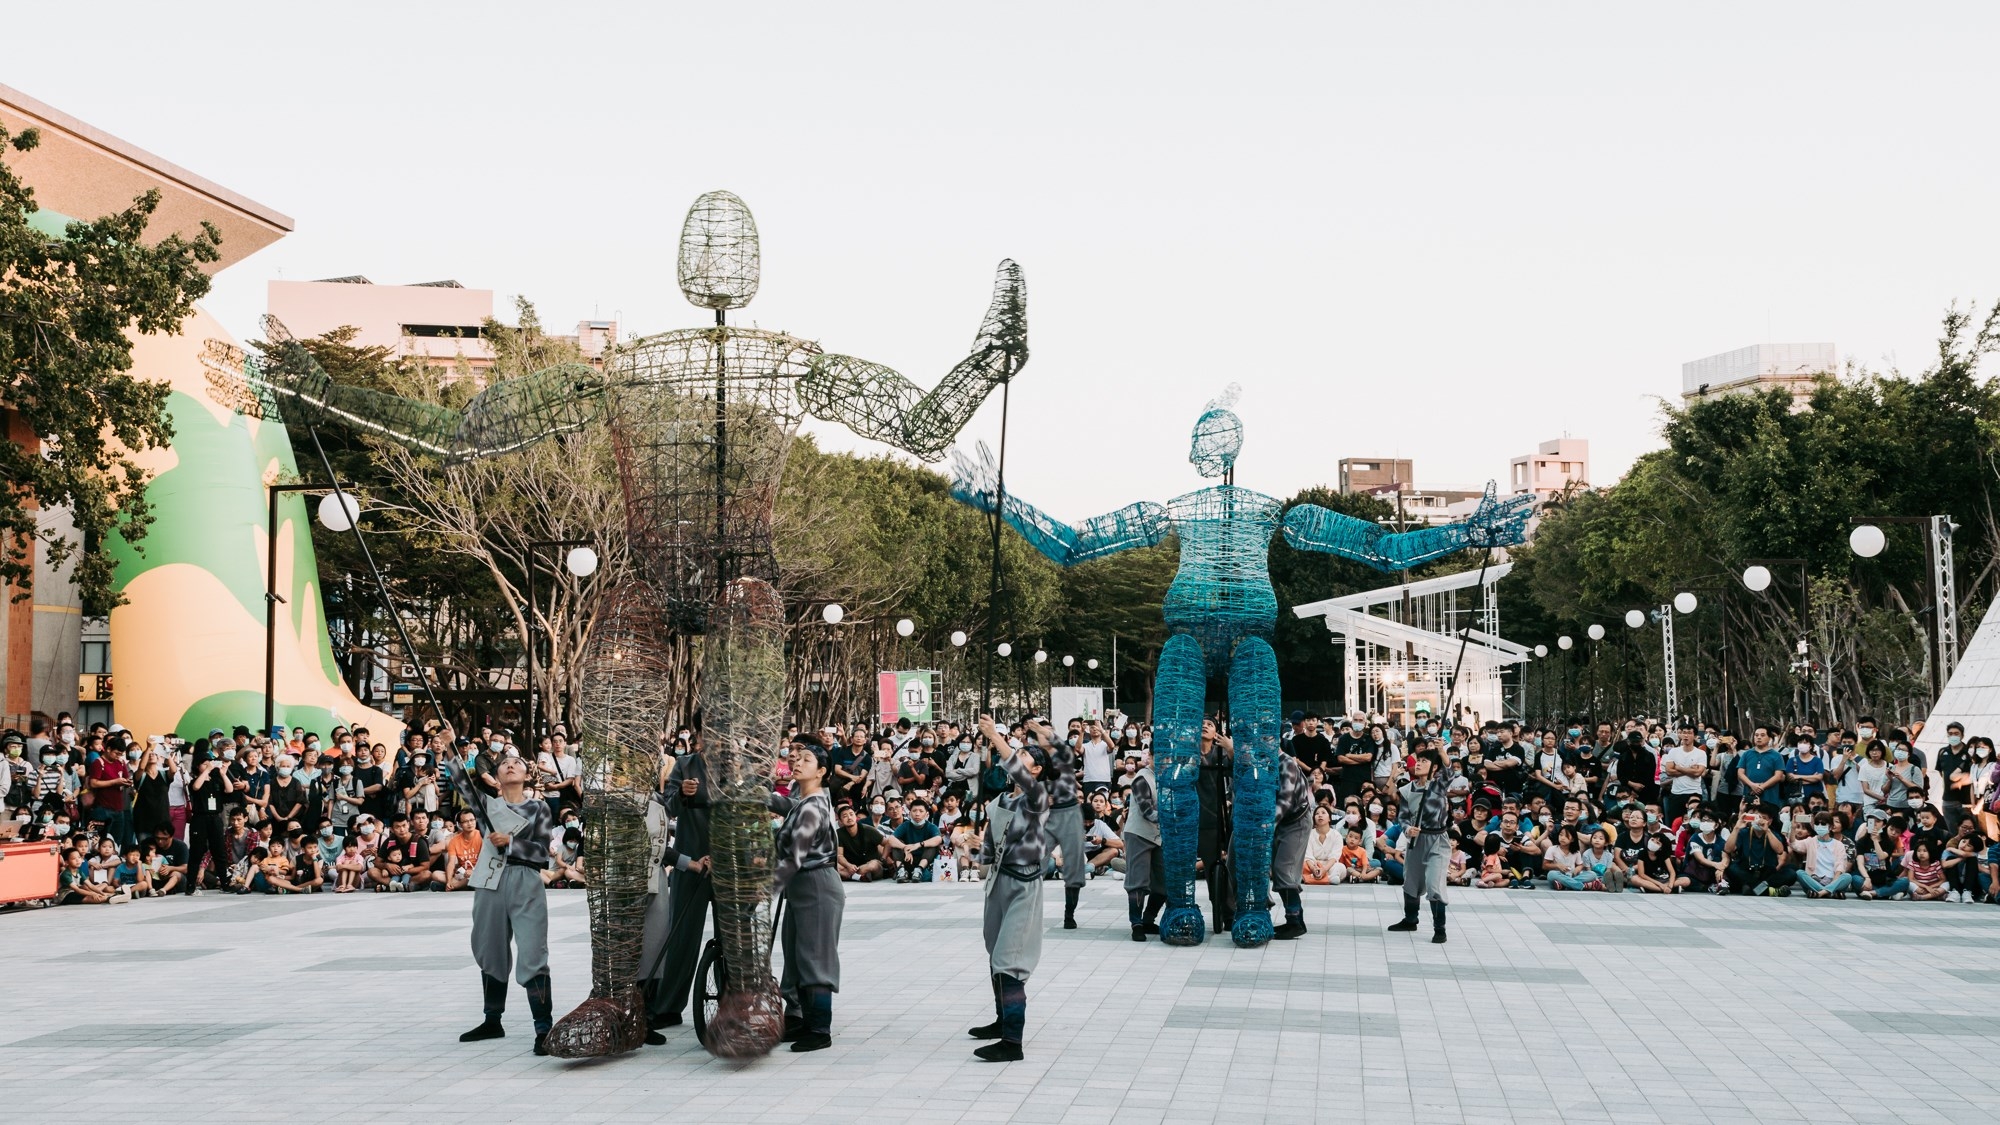 新竹市府將邀請當代偶戲劇場「無獨有偶」帶來4.5公尺高的巨偶，來街頭快閃表演。照片提供/星合有限公司＆合作社提供，攝影師李建霖